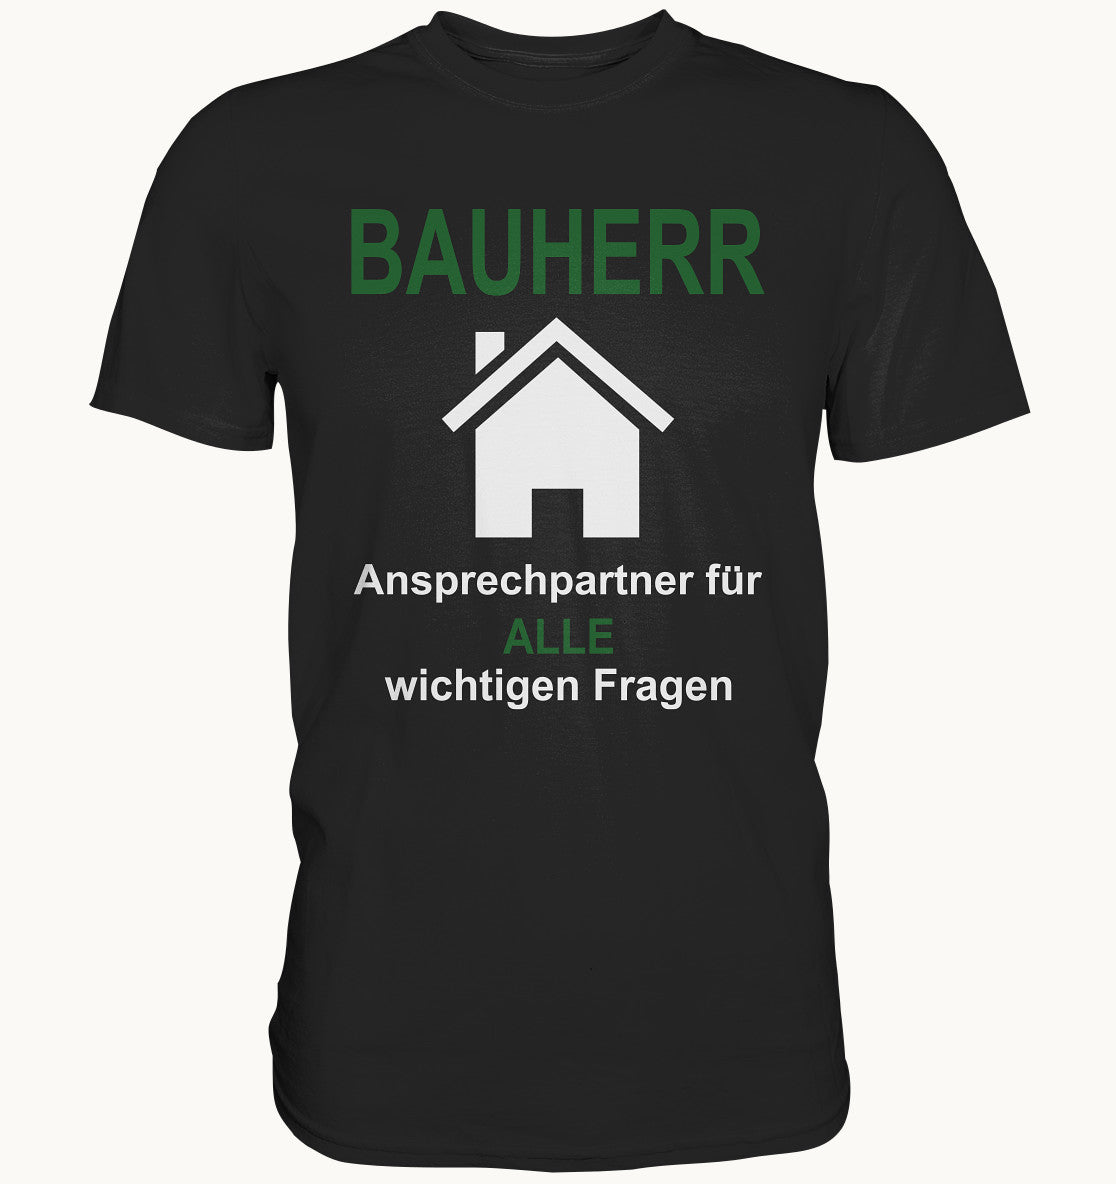 Bauherr - Ansprechparter für ALLE wichtigen Fragen - Premium Shirt